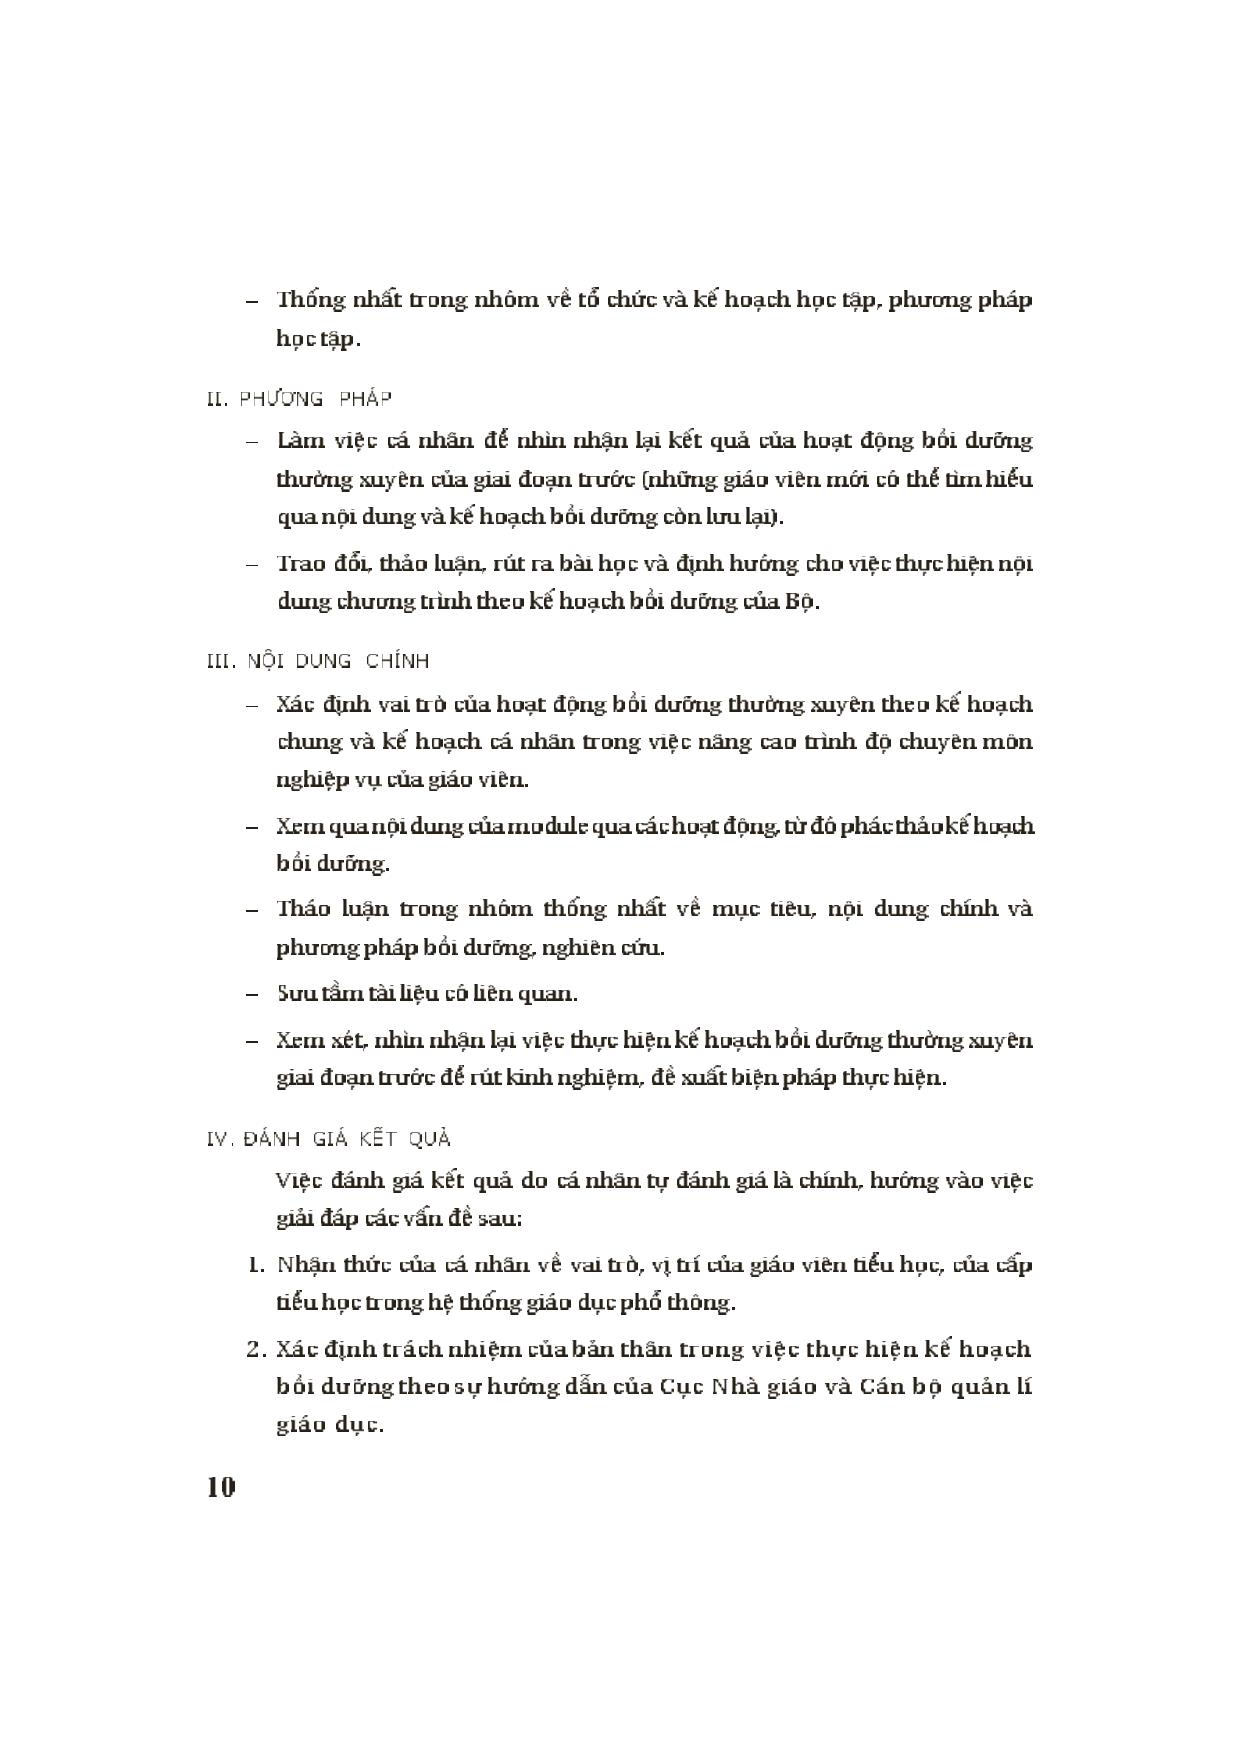 Module Tiểu học 1: Một số vấn đề về tâm lí dạy học ở Tiểu học trang 4